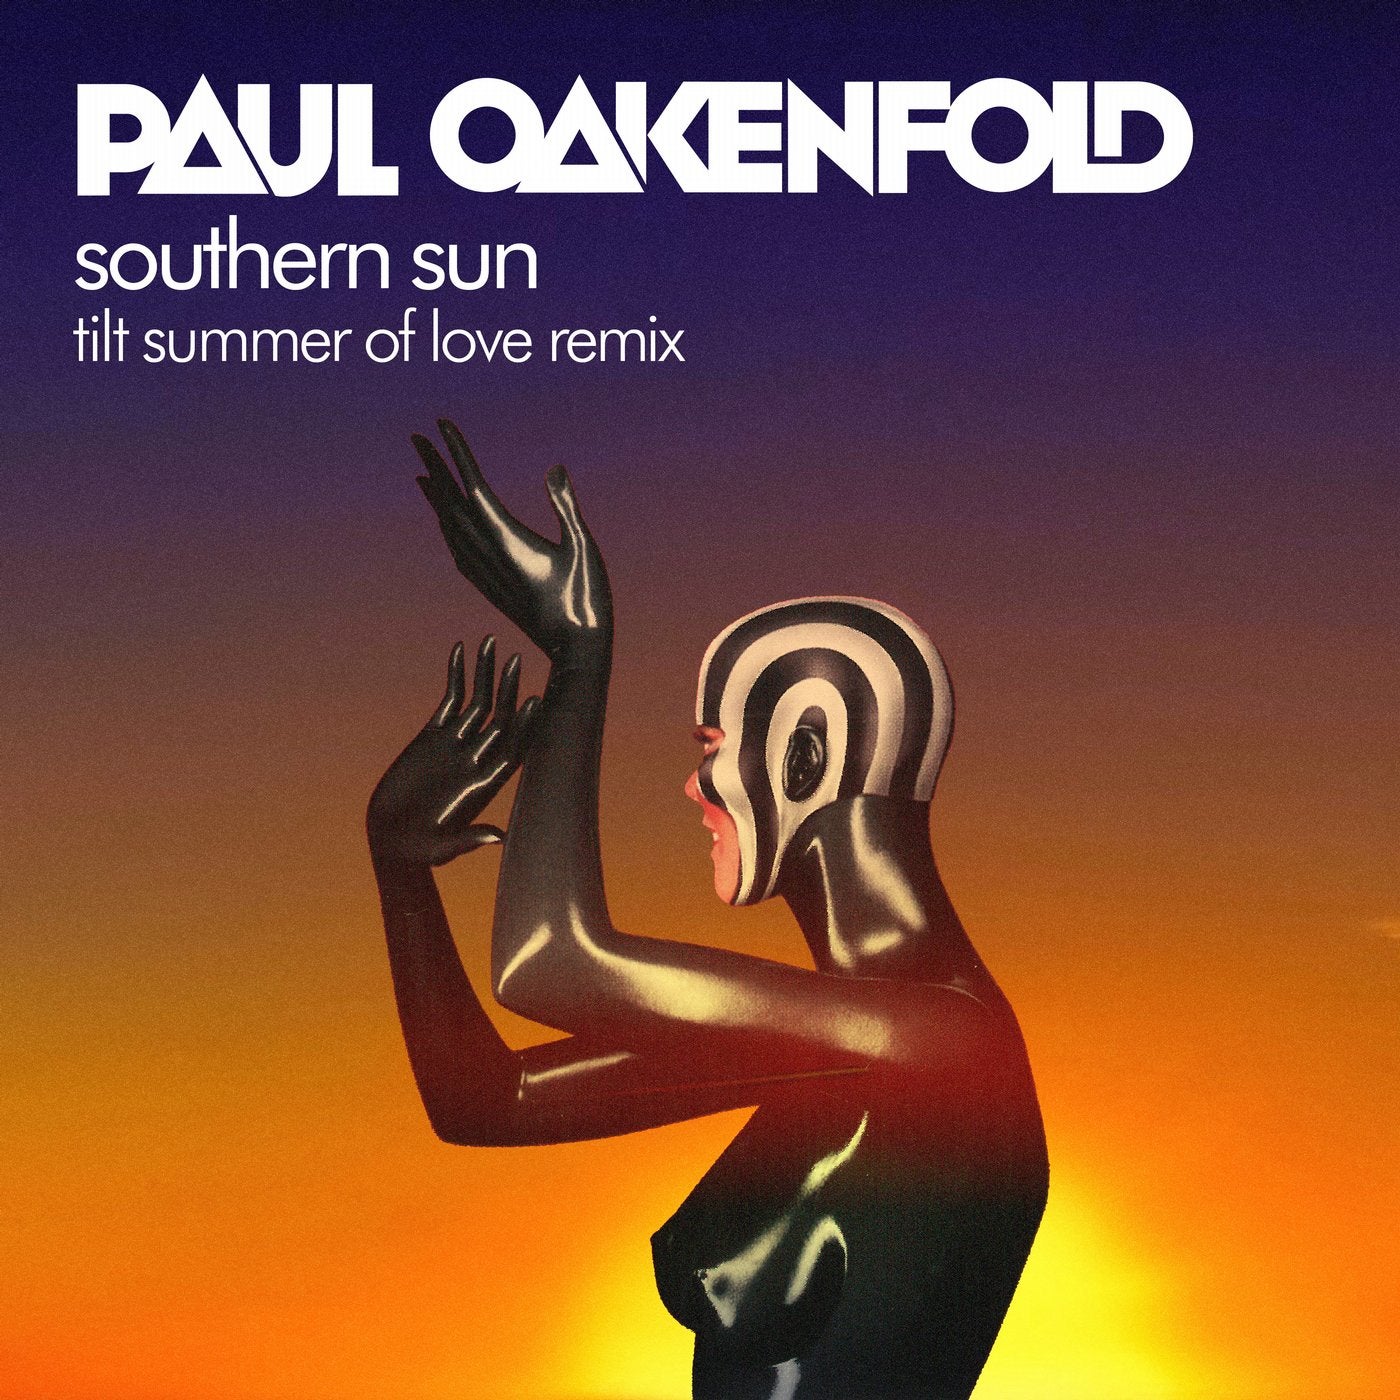 Southern sun paul. Carla Werner Southern Sun. Paul Oakenfold Southern Sun. Paul Oakenfold Remix.